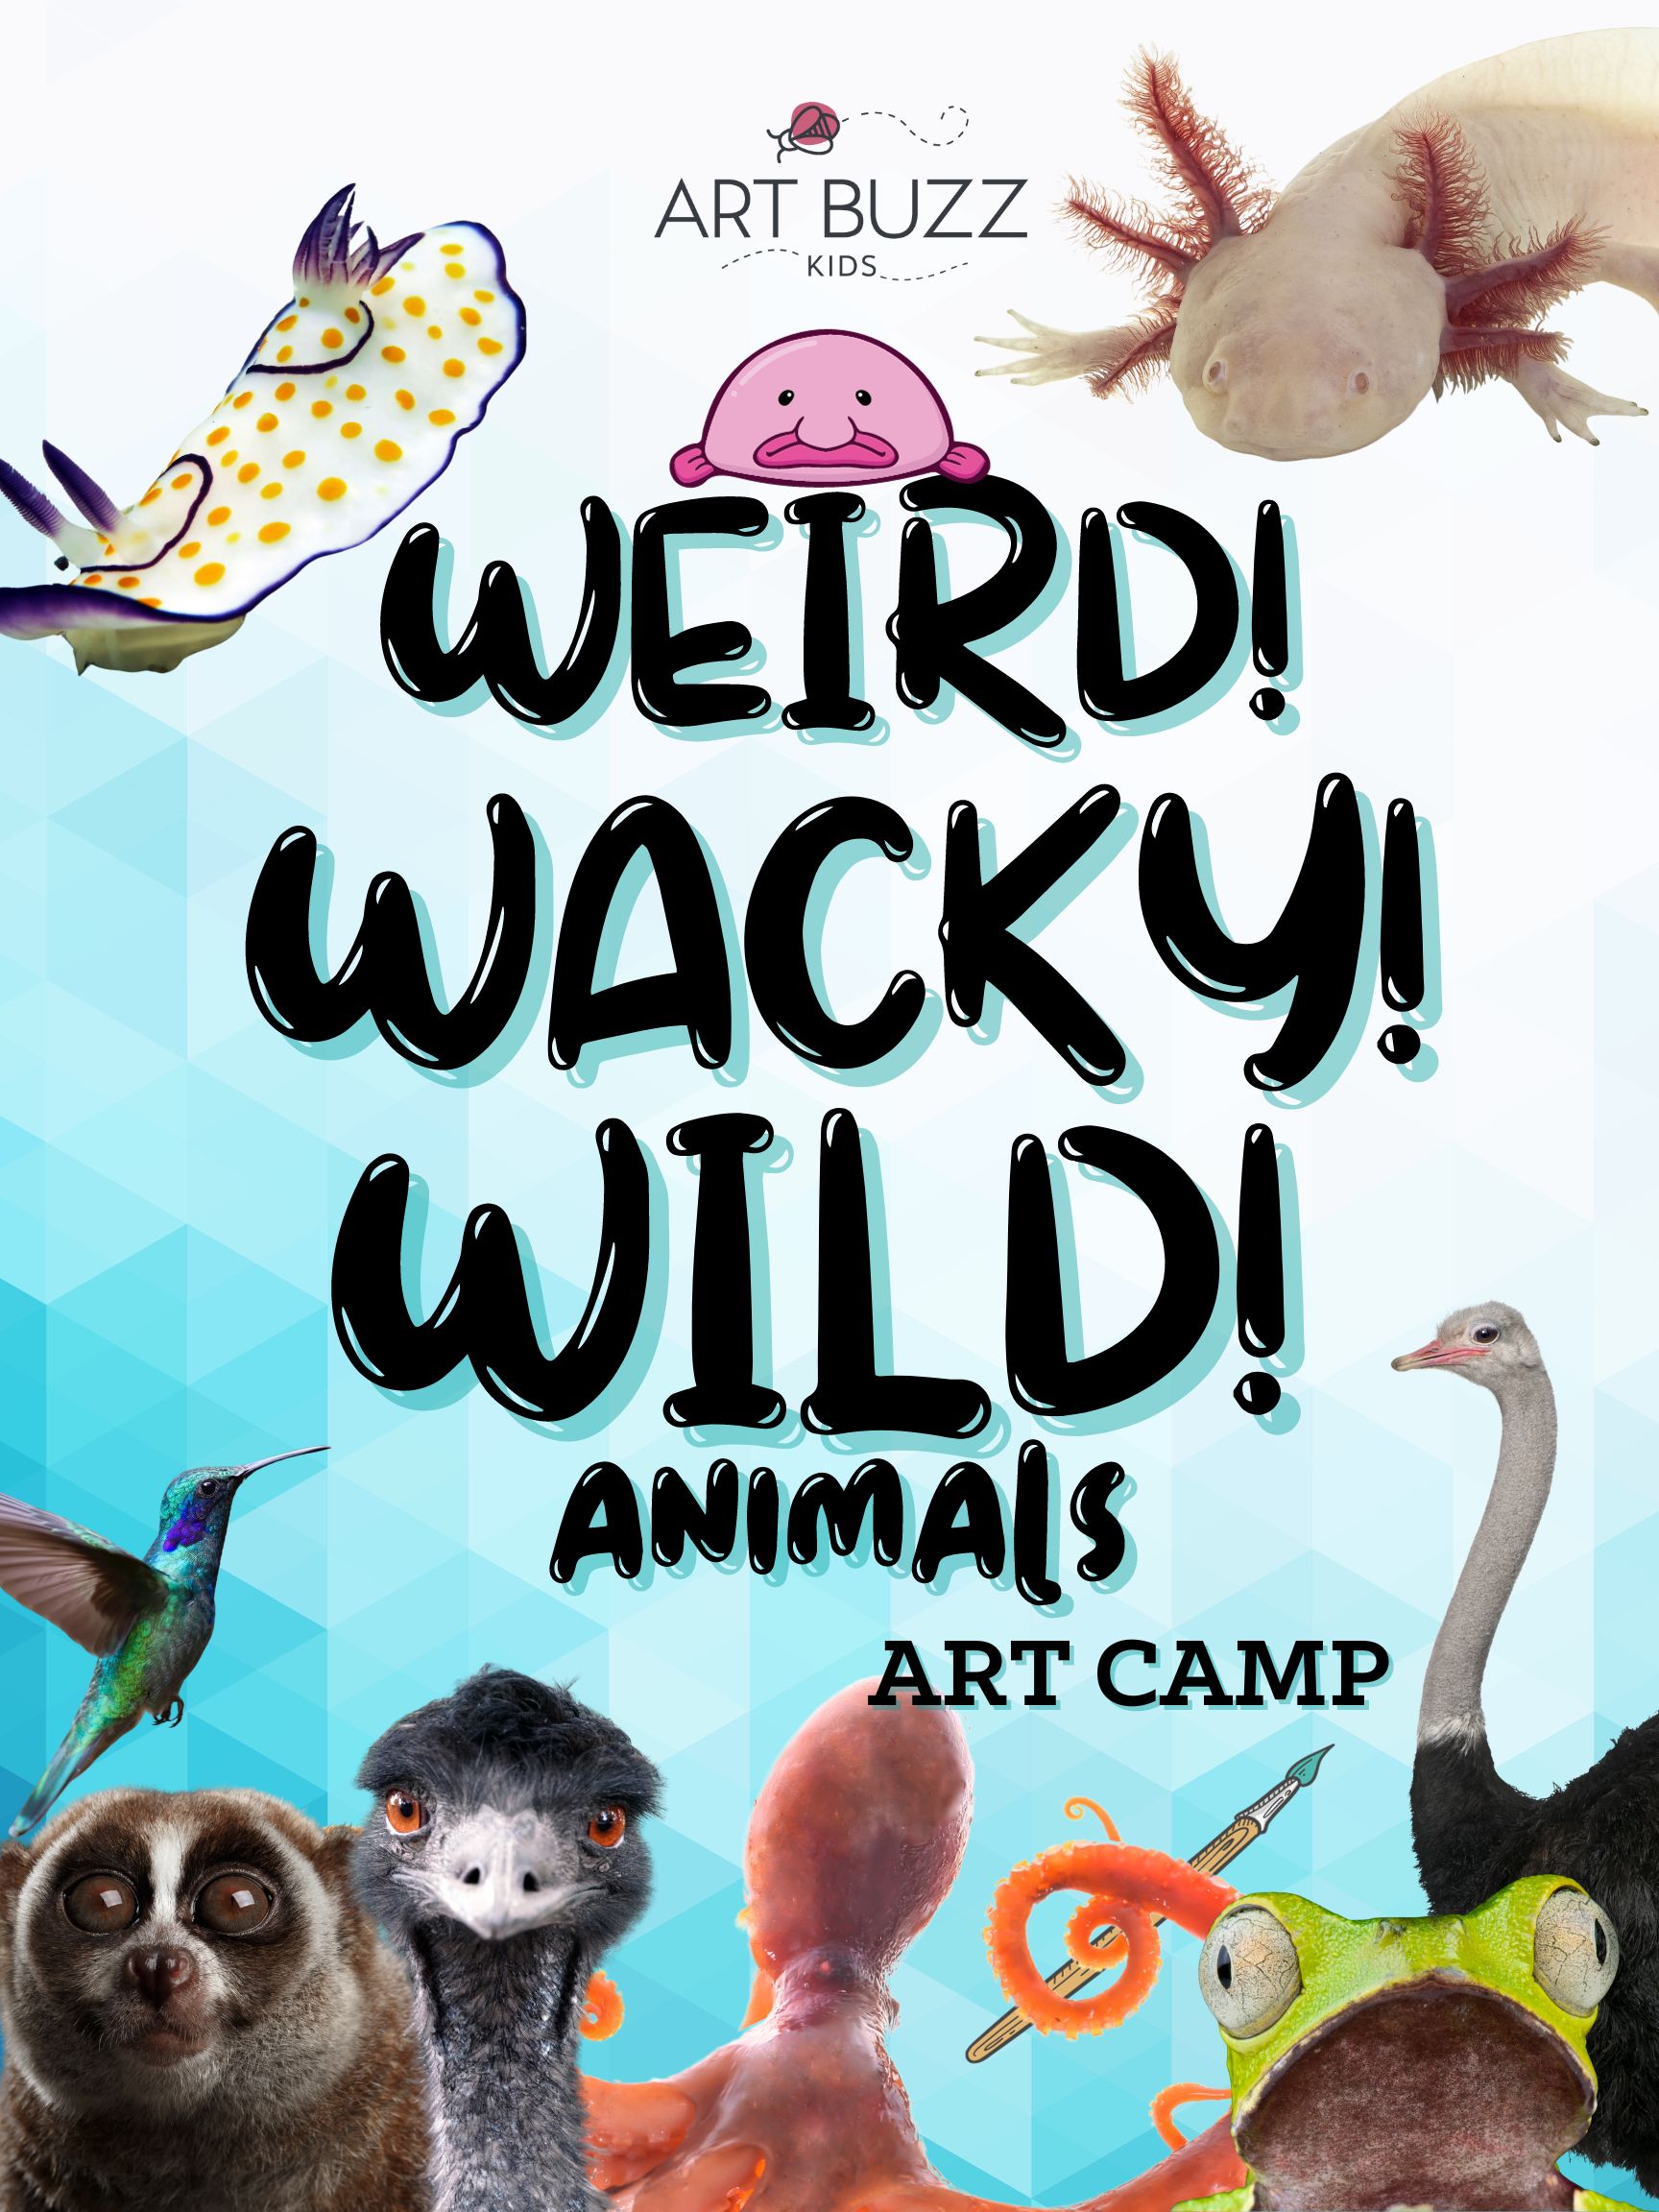 BRAND NEW: "Weird! Wacky! Wild! Animals!" Art Buzz Kids Art Camp! 10AM-2PM